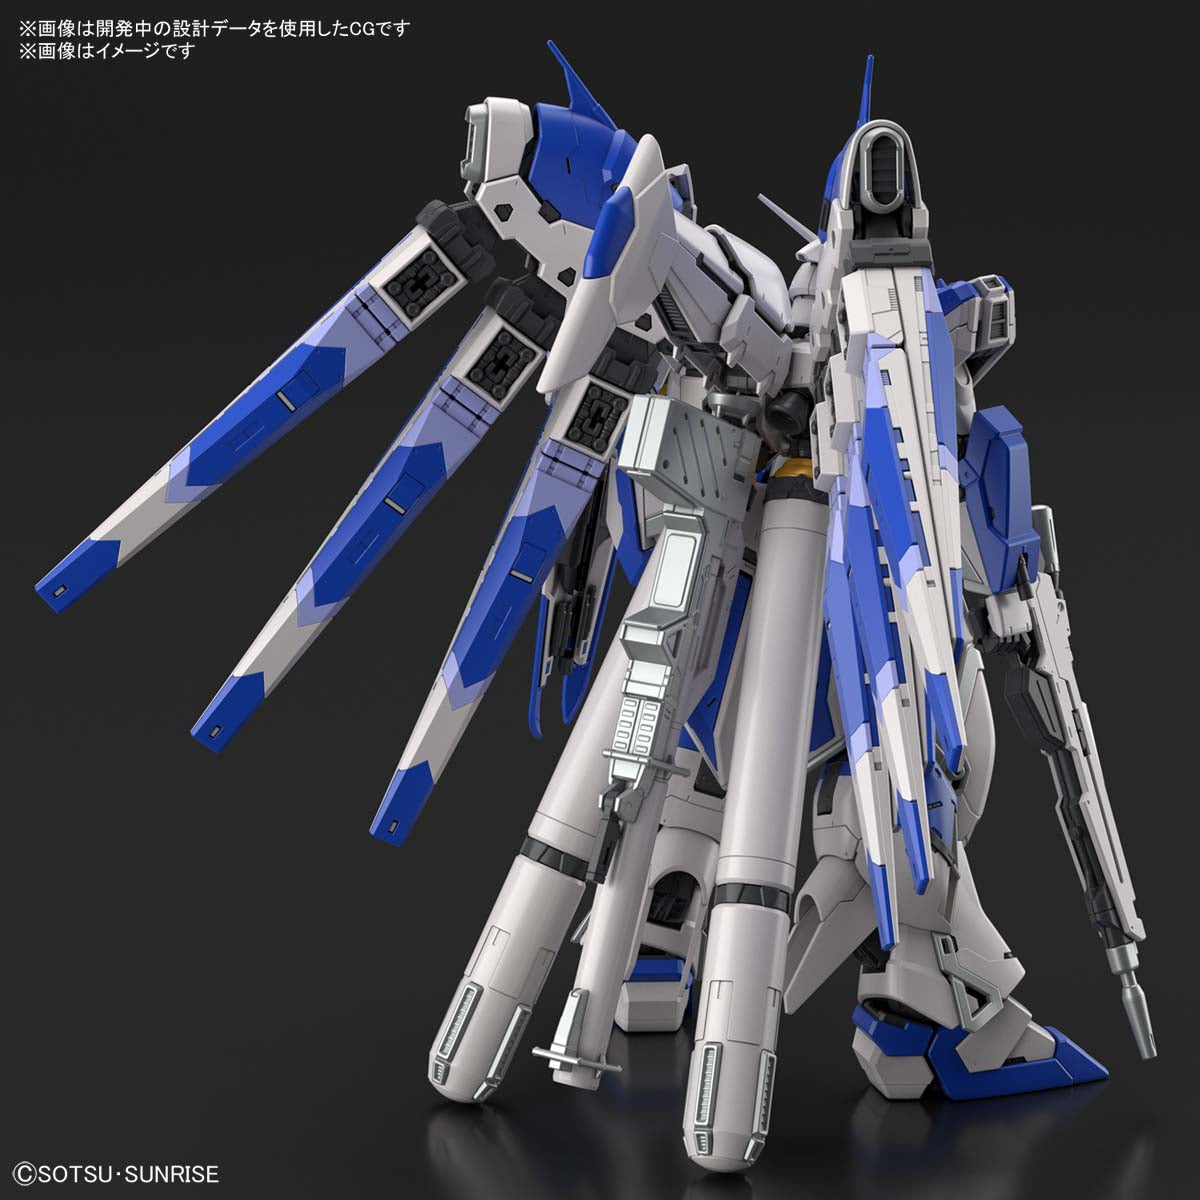 RG - RX-93-v2 Hi-v Nu Gundam